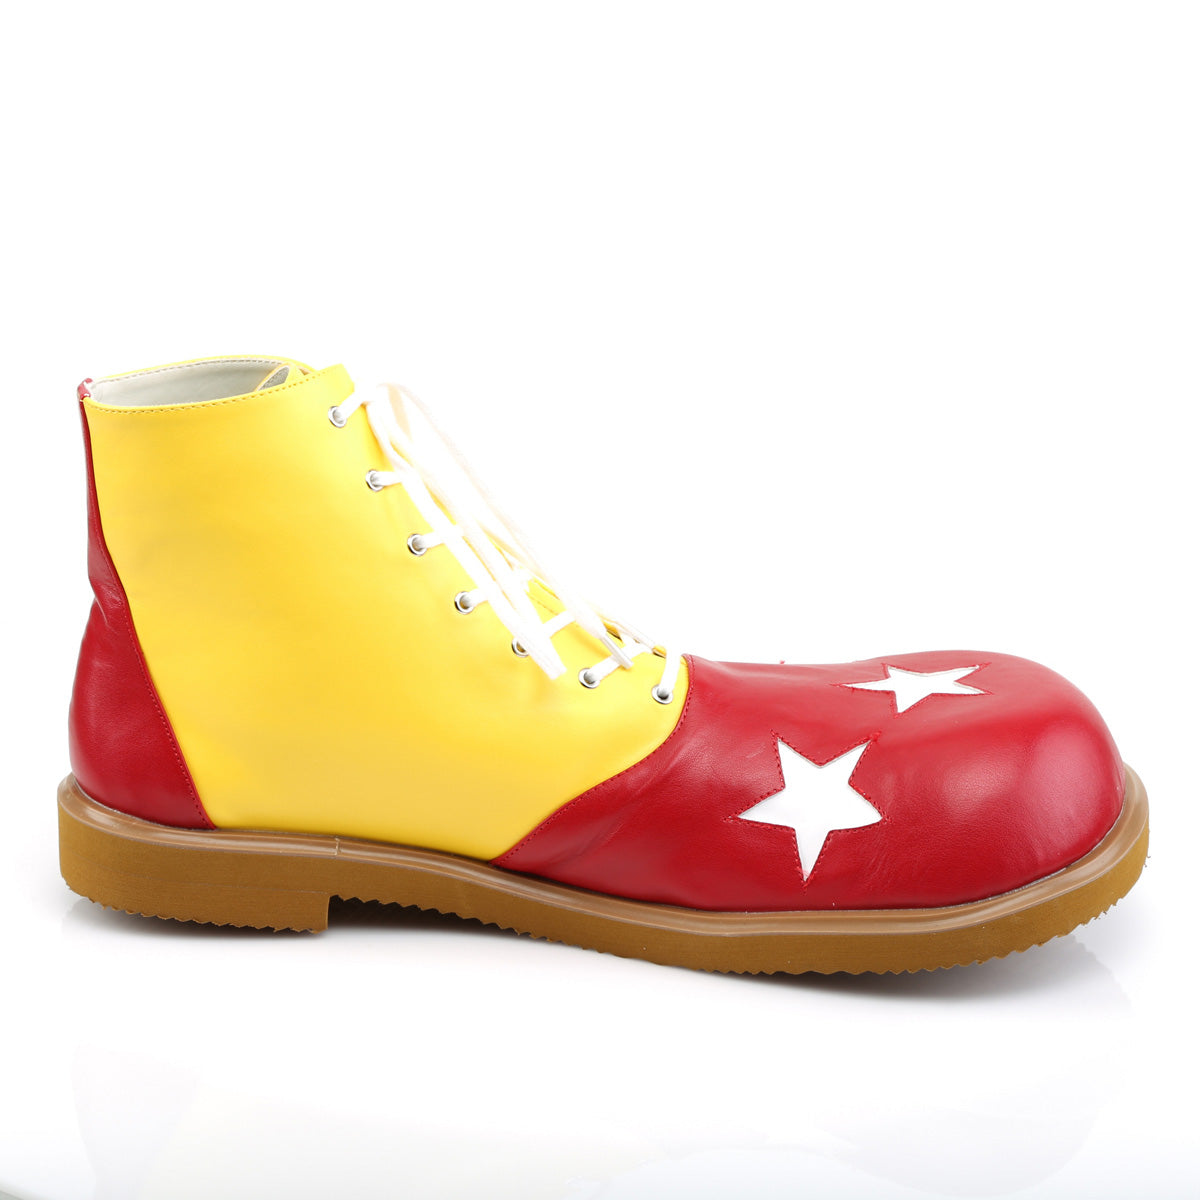 Funtasma Womens Low Shoe CLOWN-02 Yellow-Red Pu